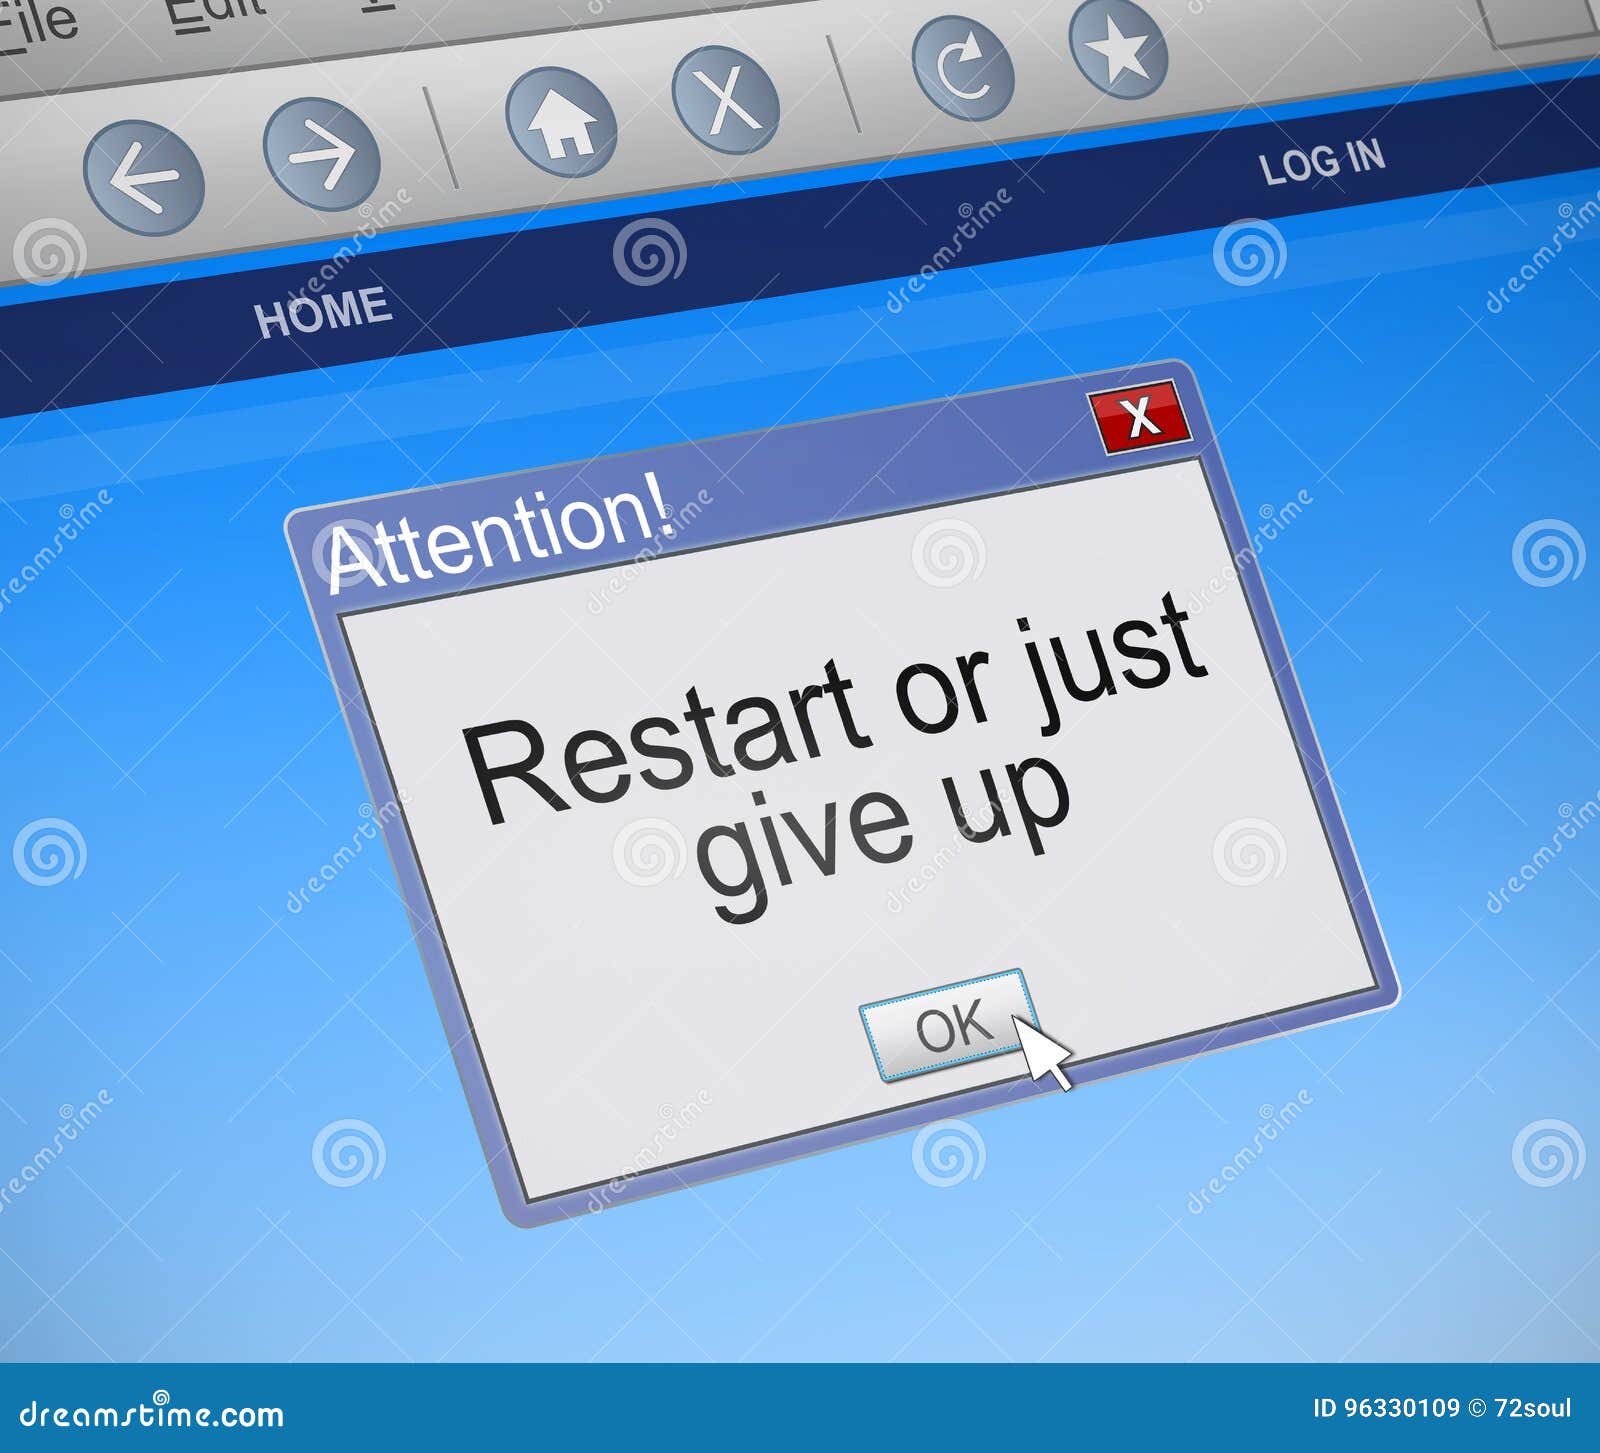 Restart Or Give Up Concept. Stock Illustration - Image 